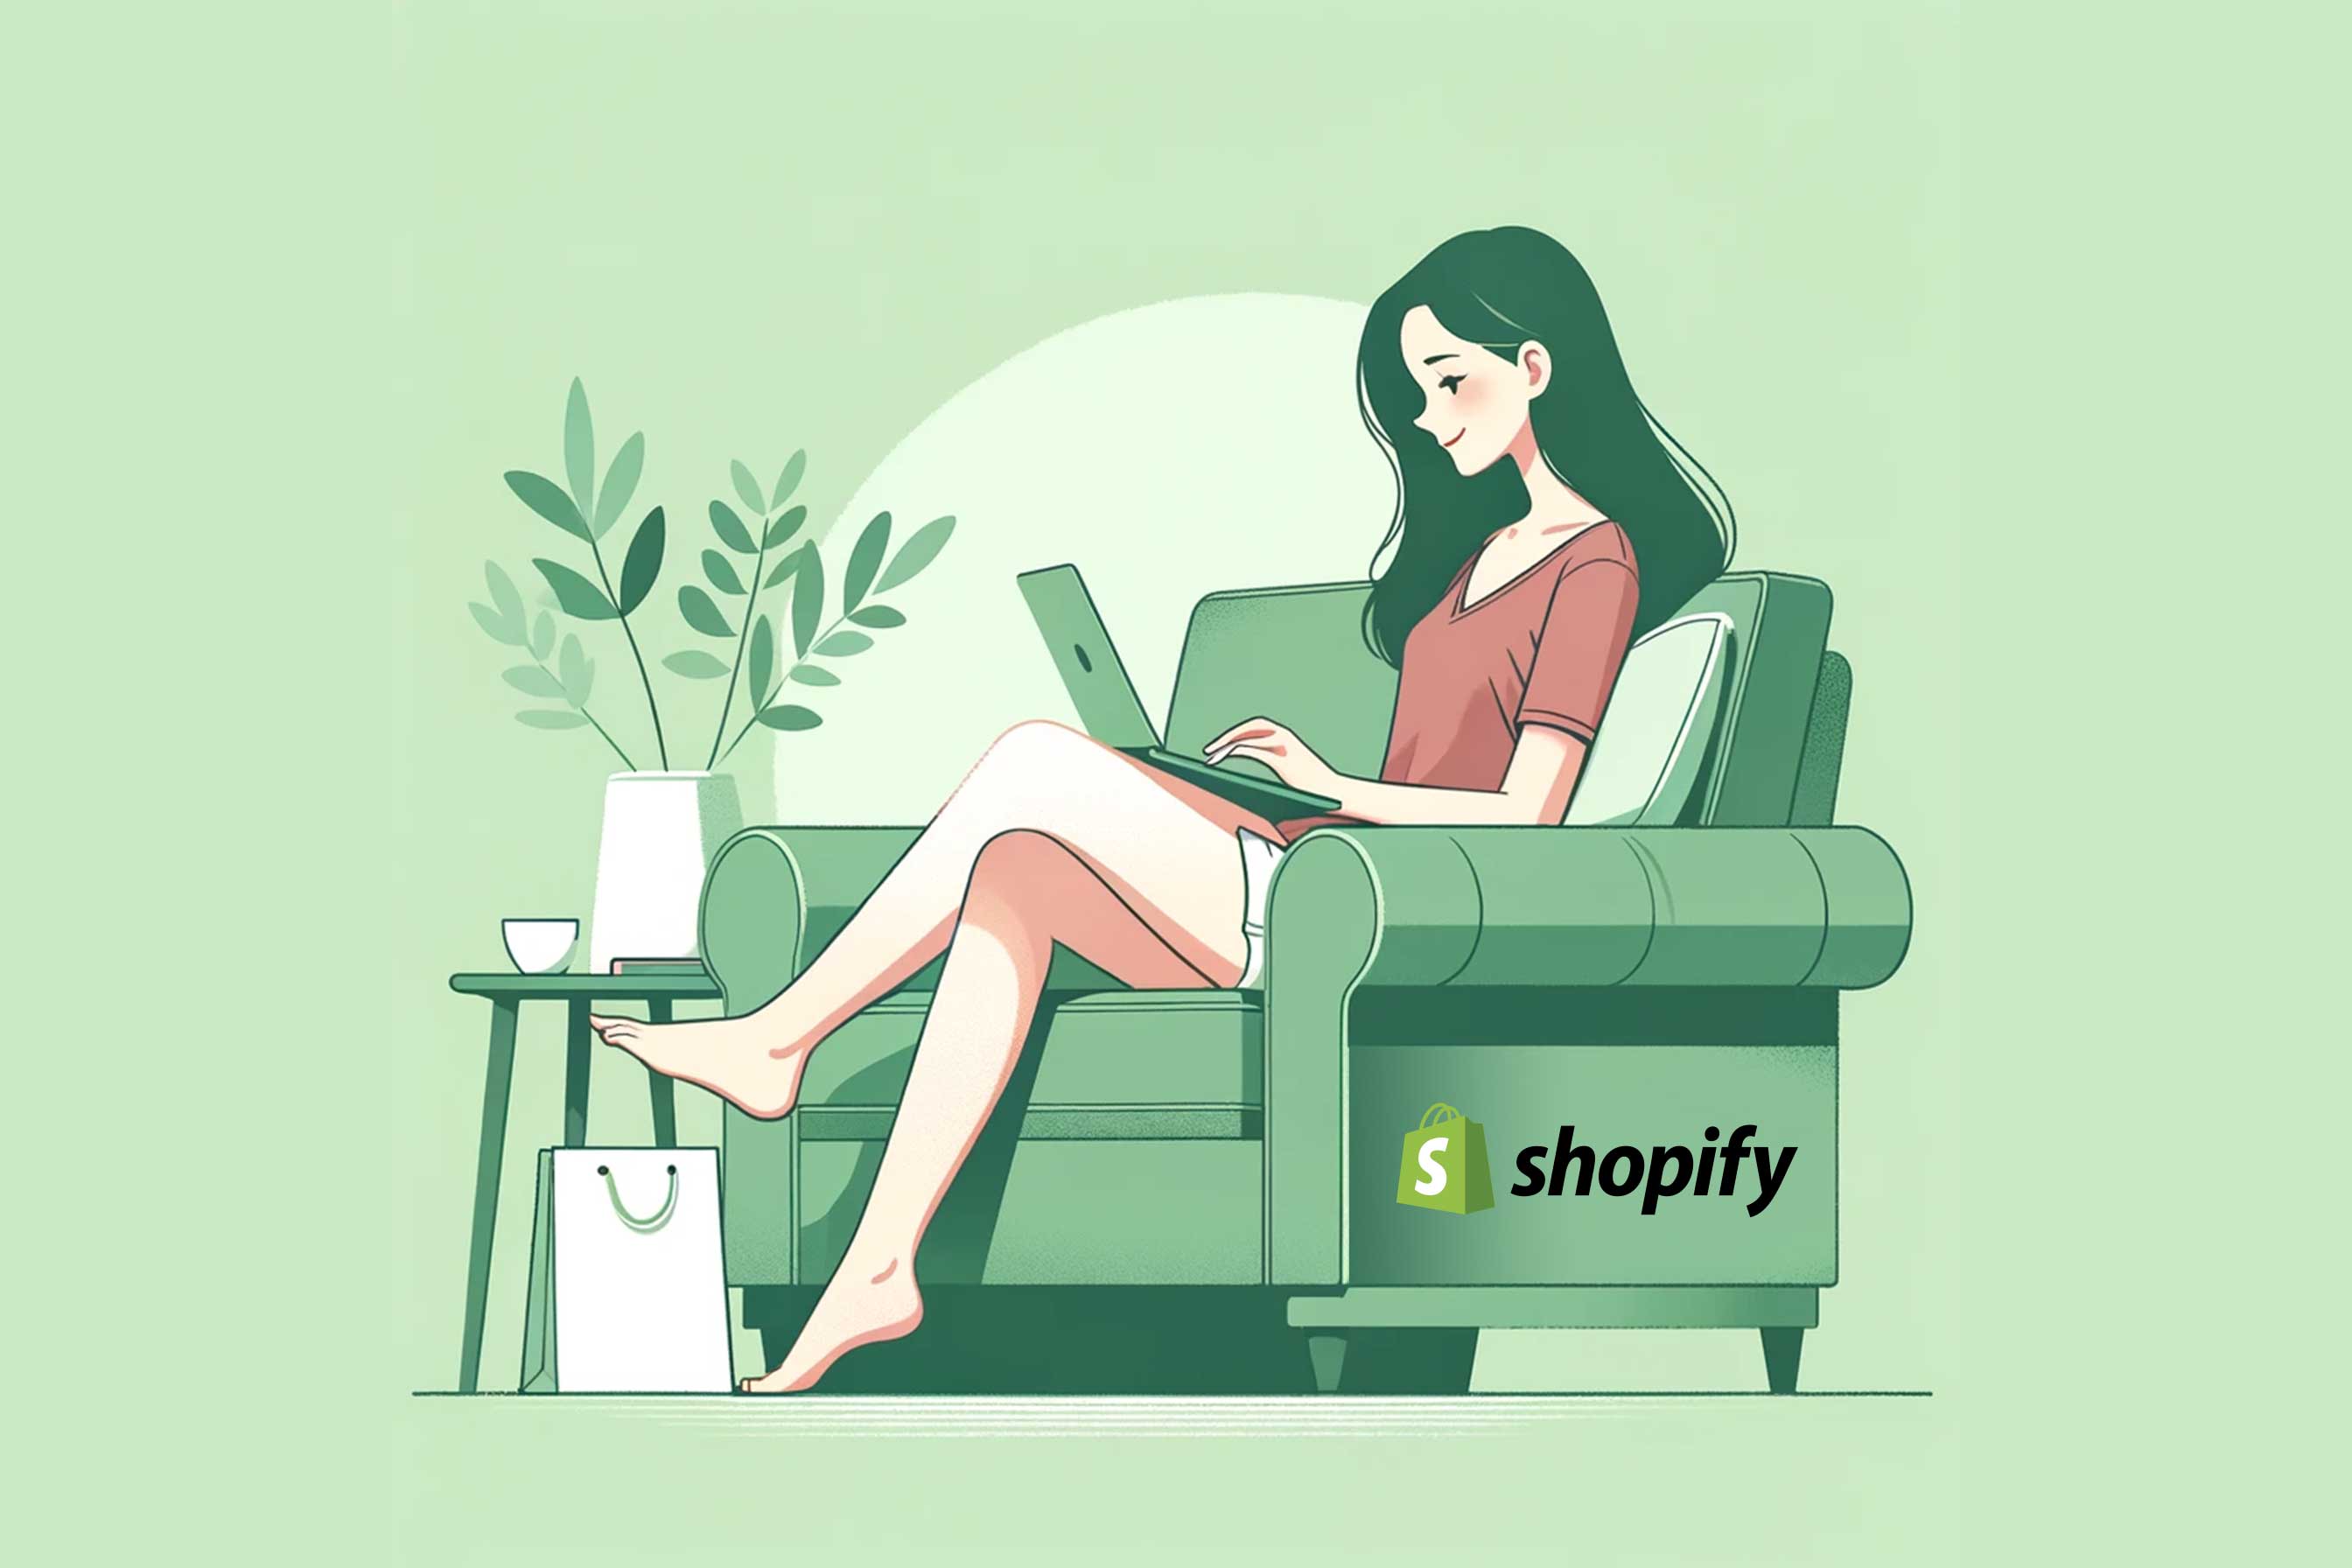 Shopify Shop erstellen lassen: Kosten, Aufwand und allgemeine Infos